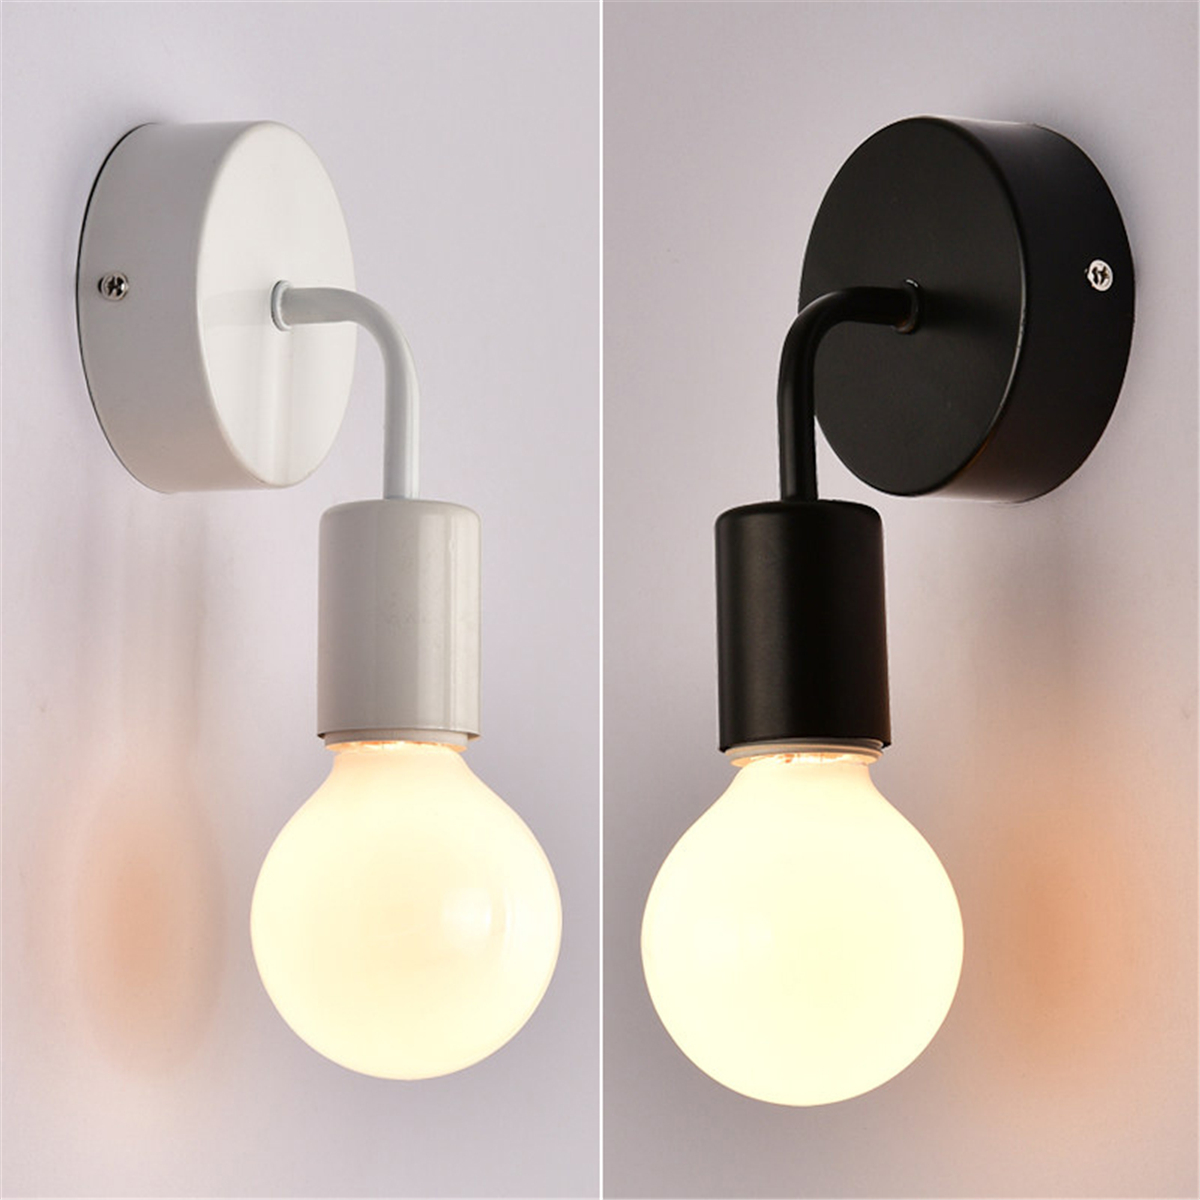 Vintage-Industrial-Wall-Lamp-Lighting-Indoor-Bedside-Bulb-Holder-Decor-1635613-3